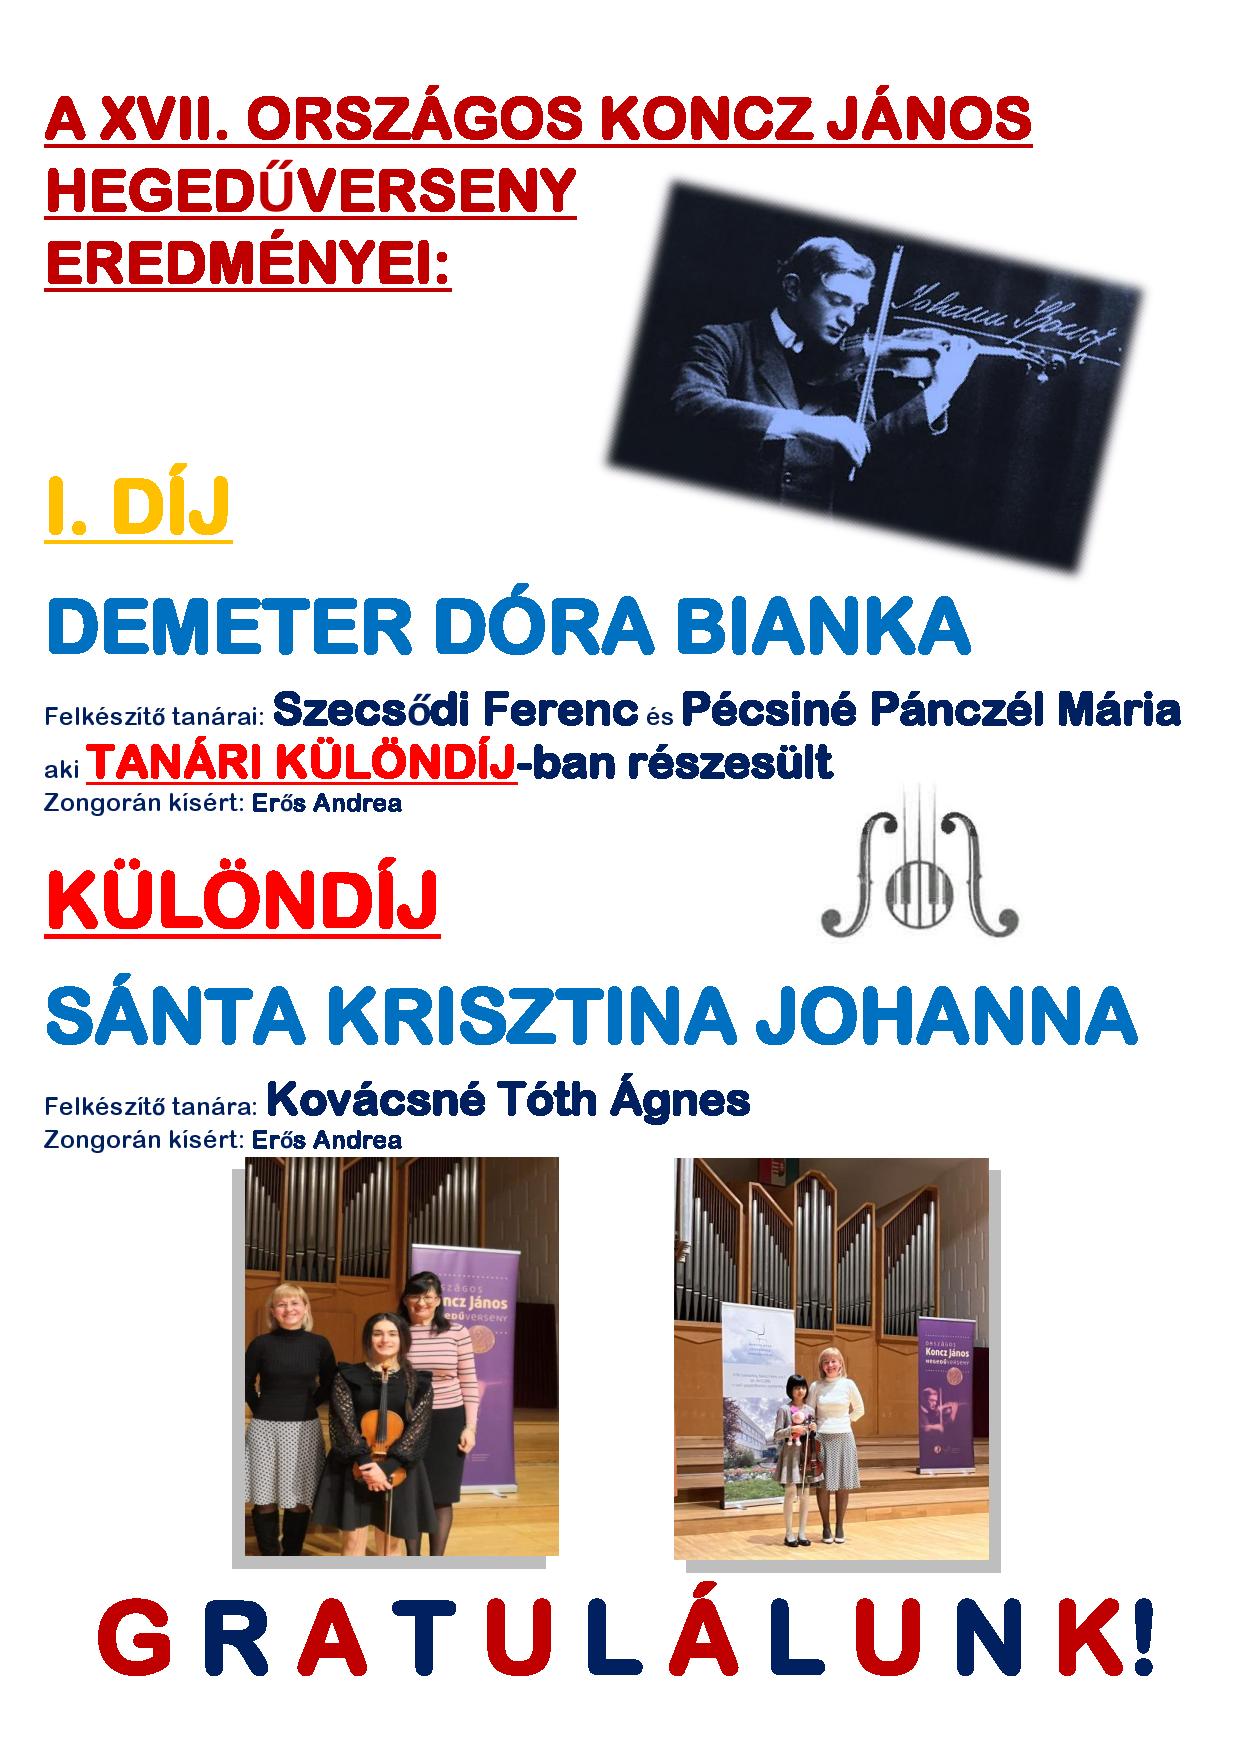 2022.11.24-26. - XVII. Országos Koncz János Hegedűverseny, Szombathely